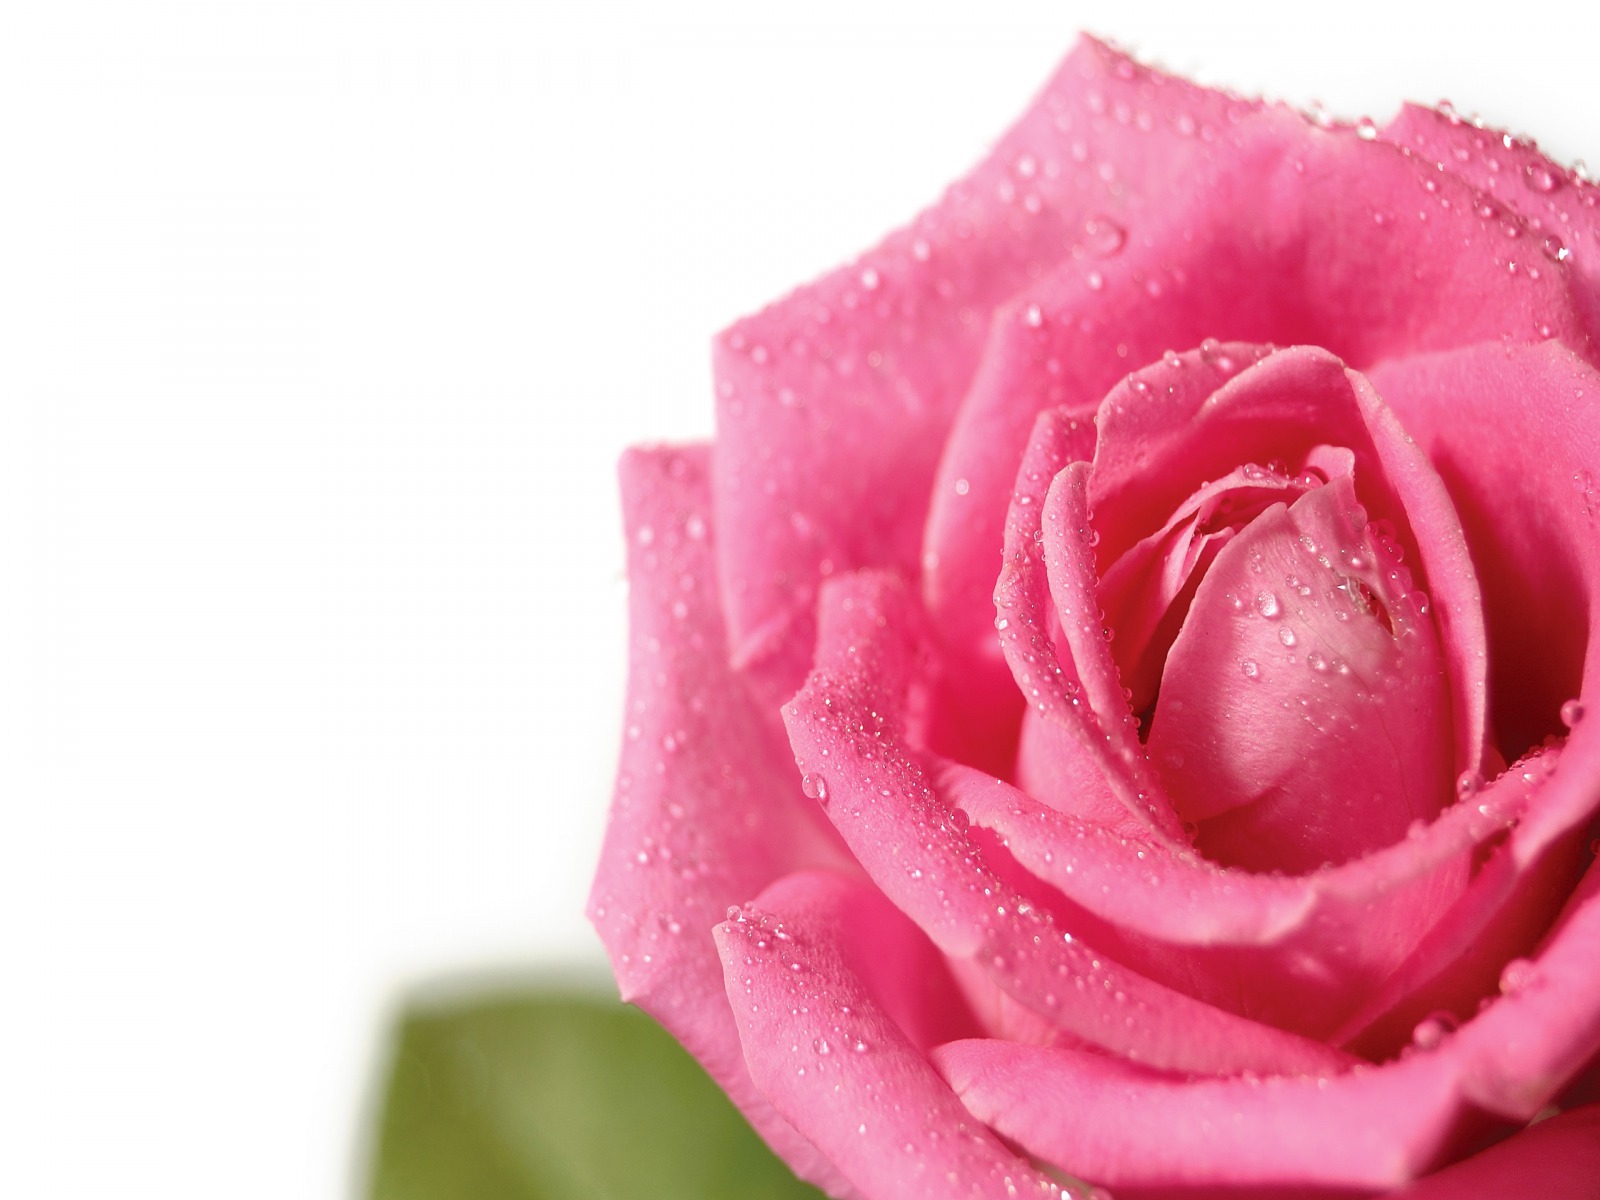 tapete rosa,gartenrosen,blühende pflanze,rose,rosa,blütenblatt